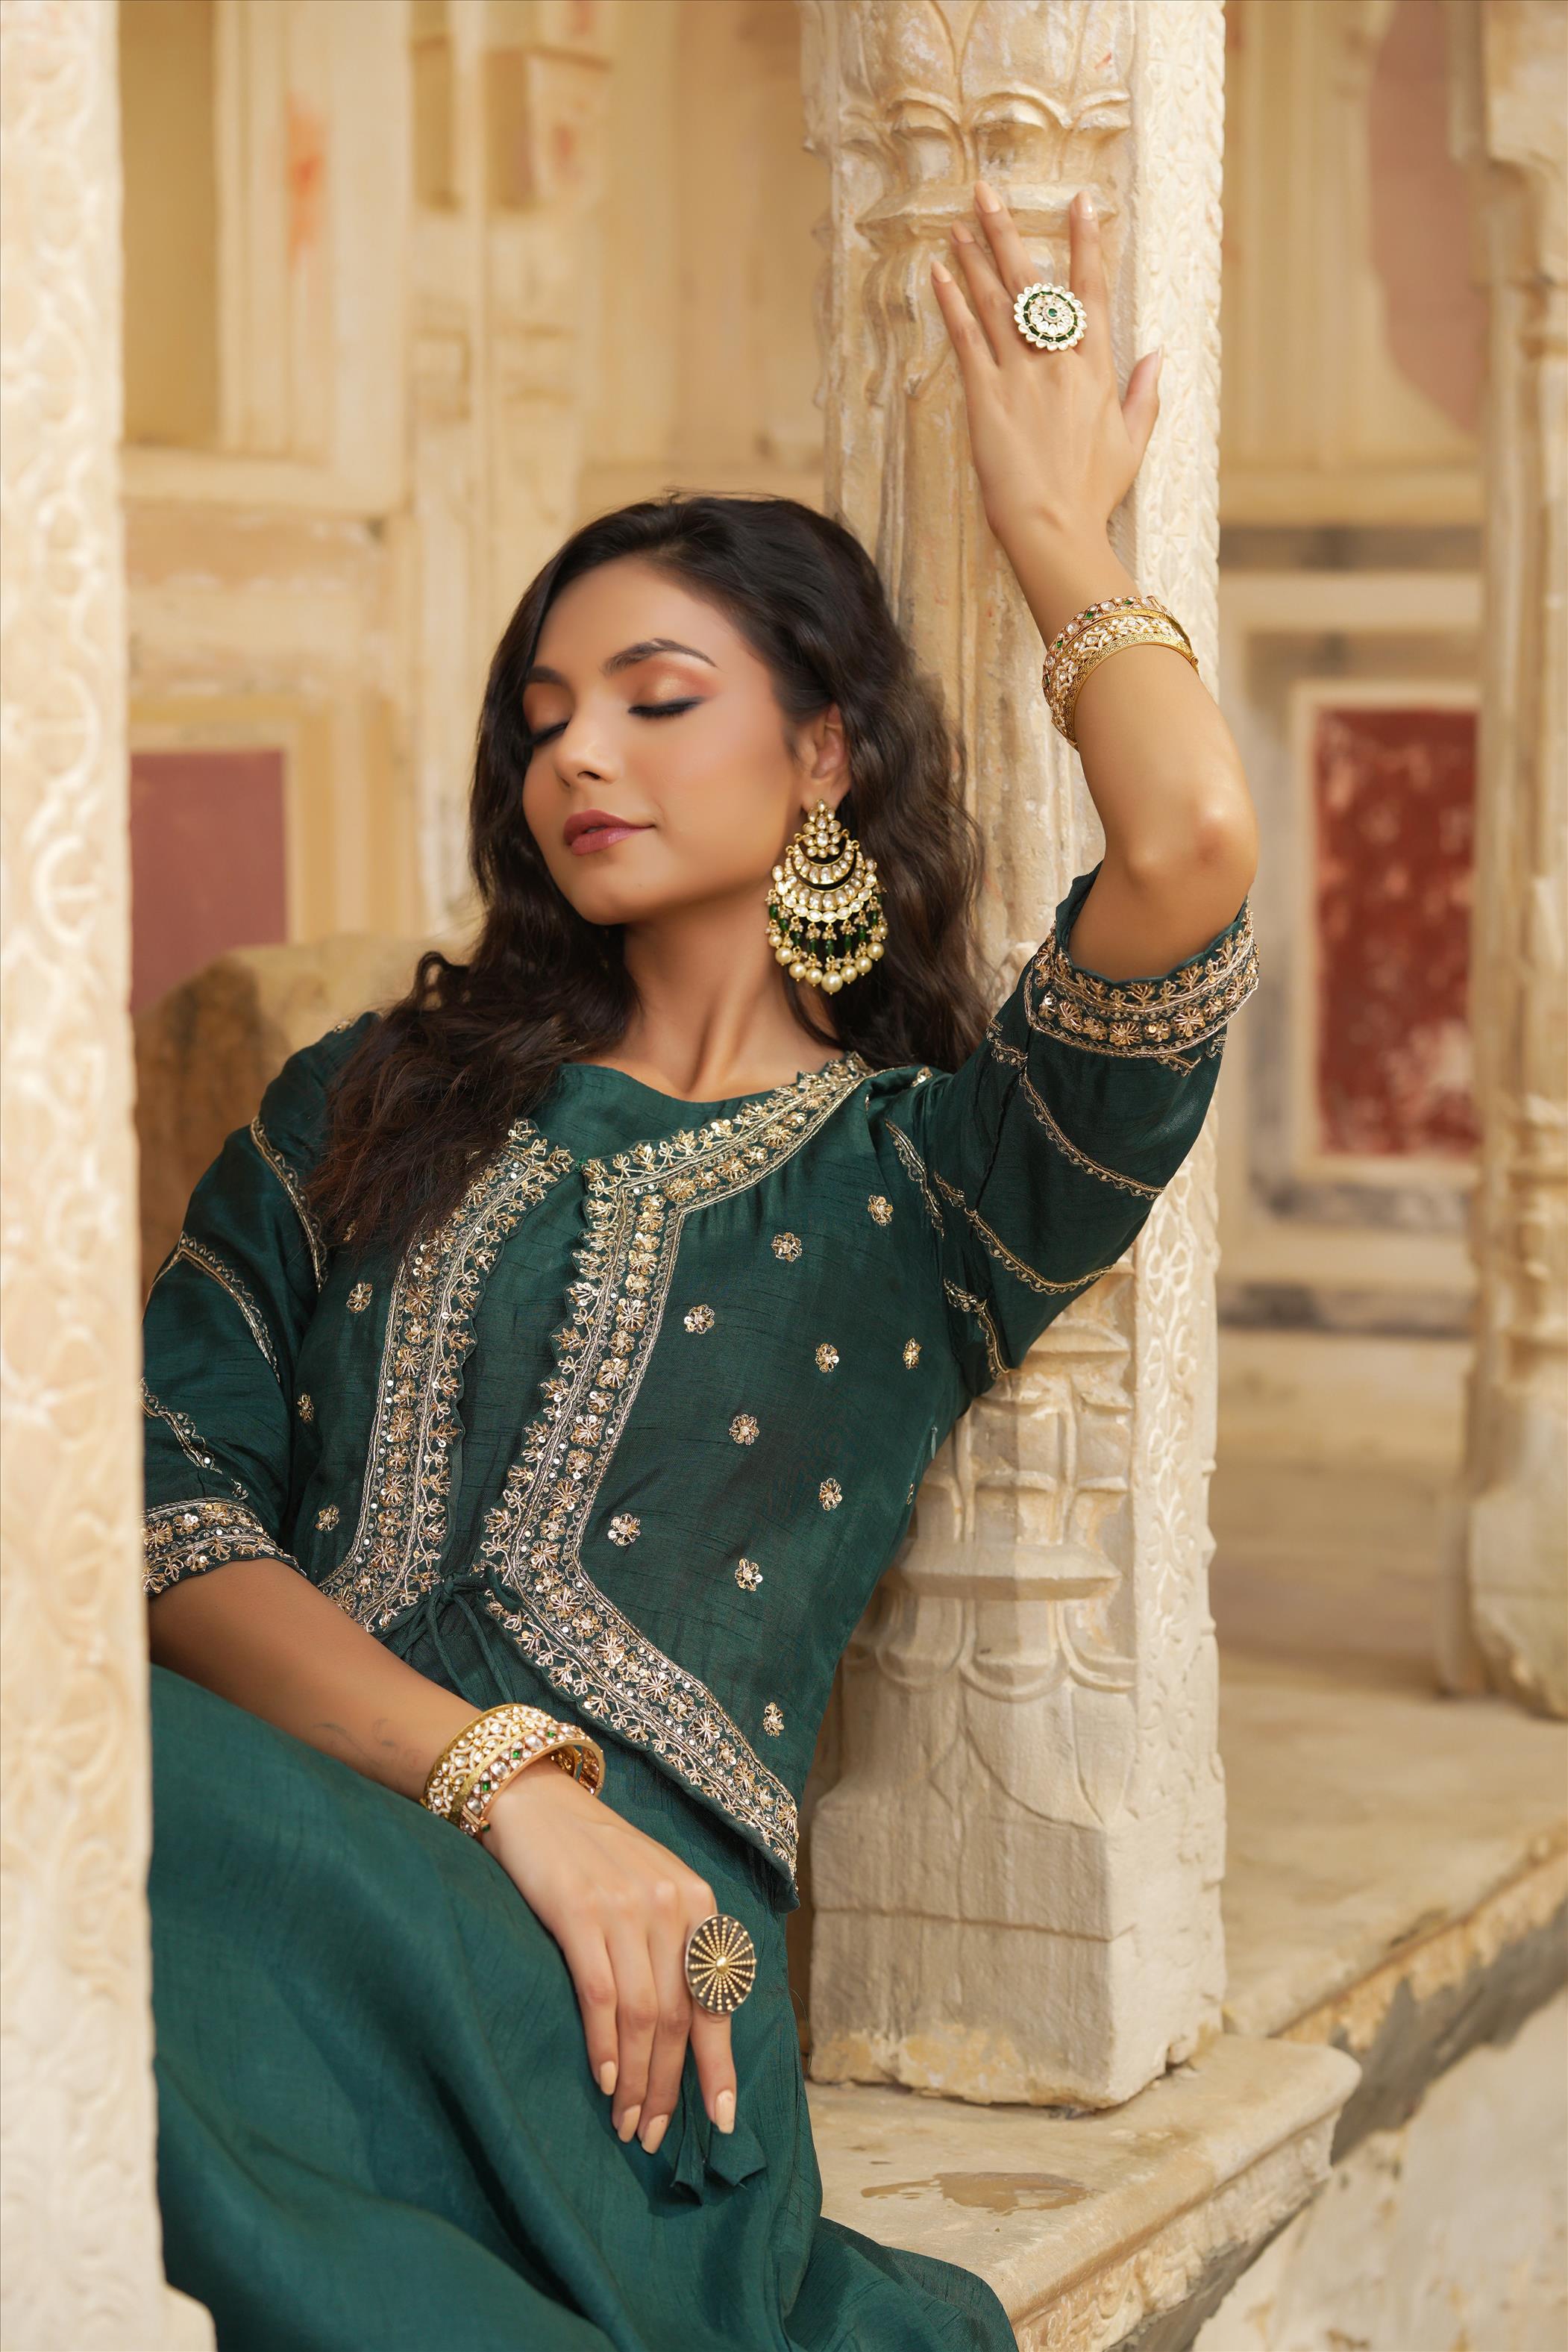 Jadegreen Dola Silk Embellished Hand Work Jacket Style Flared Ethnic Dress